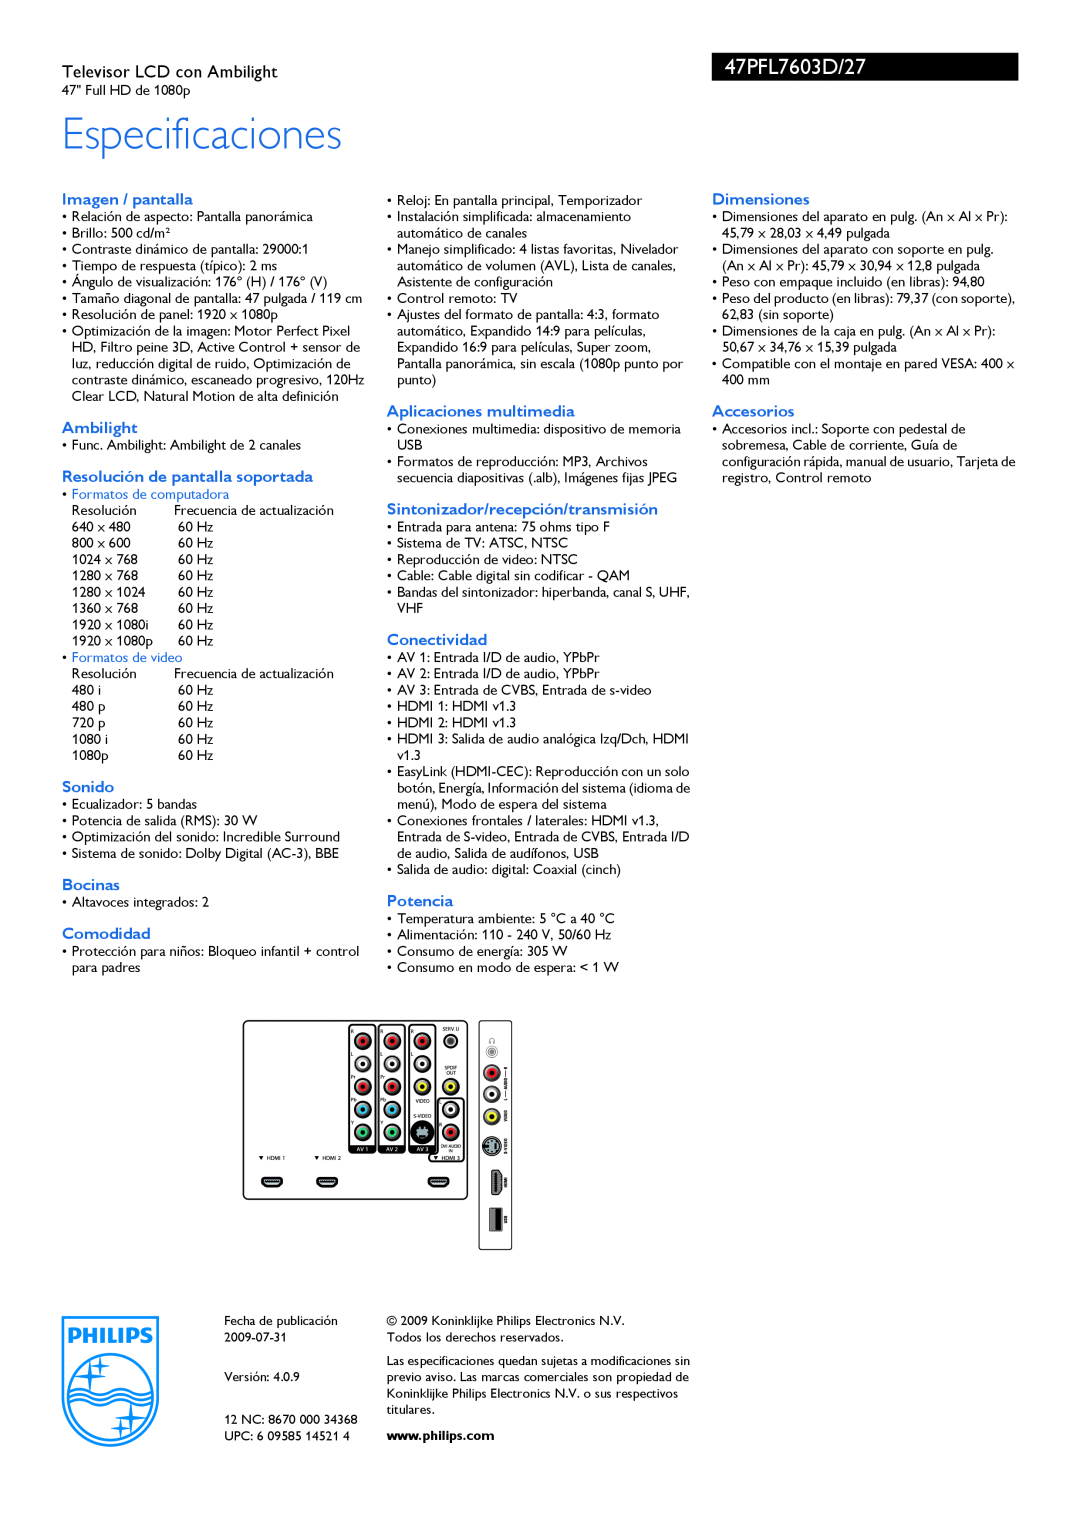 Philips manual Especificaciones, 47PFL7603D/27, Televisor LCD con Ambilight, Formatos de computadora, Formatos de video 